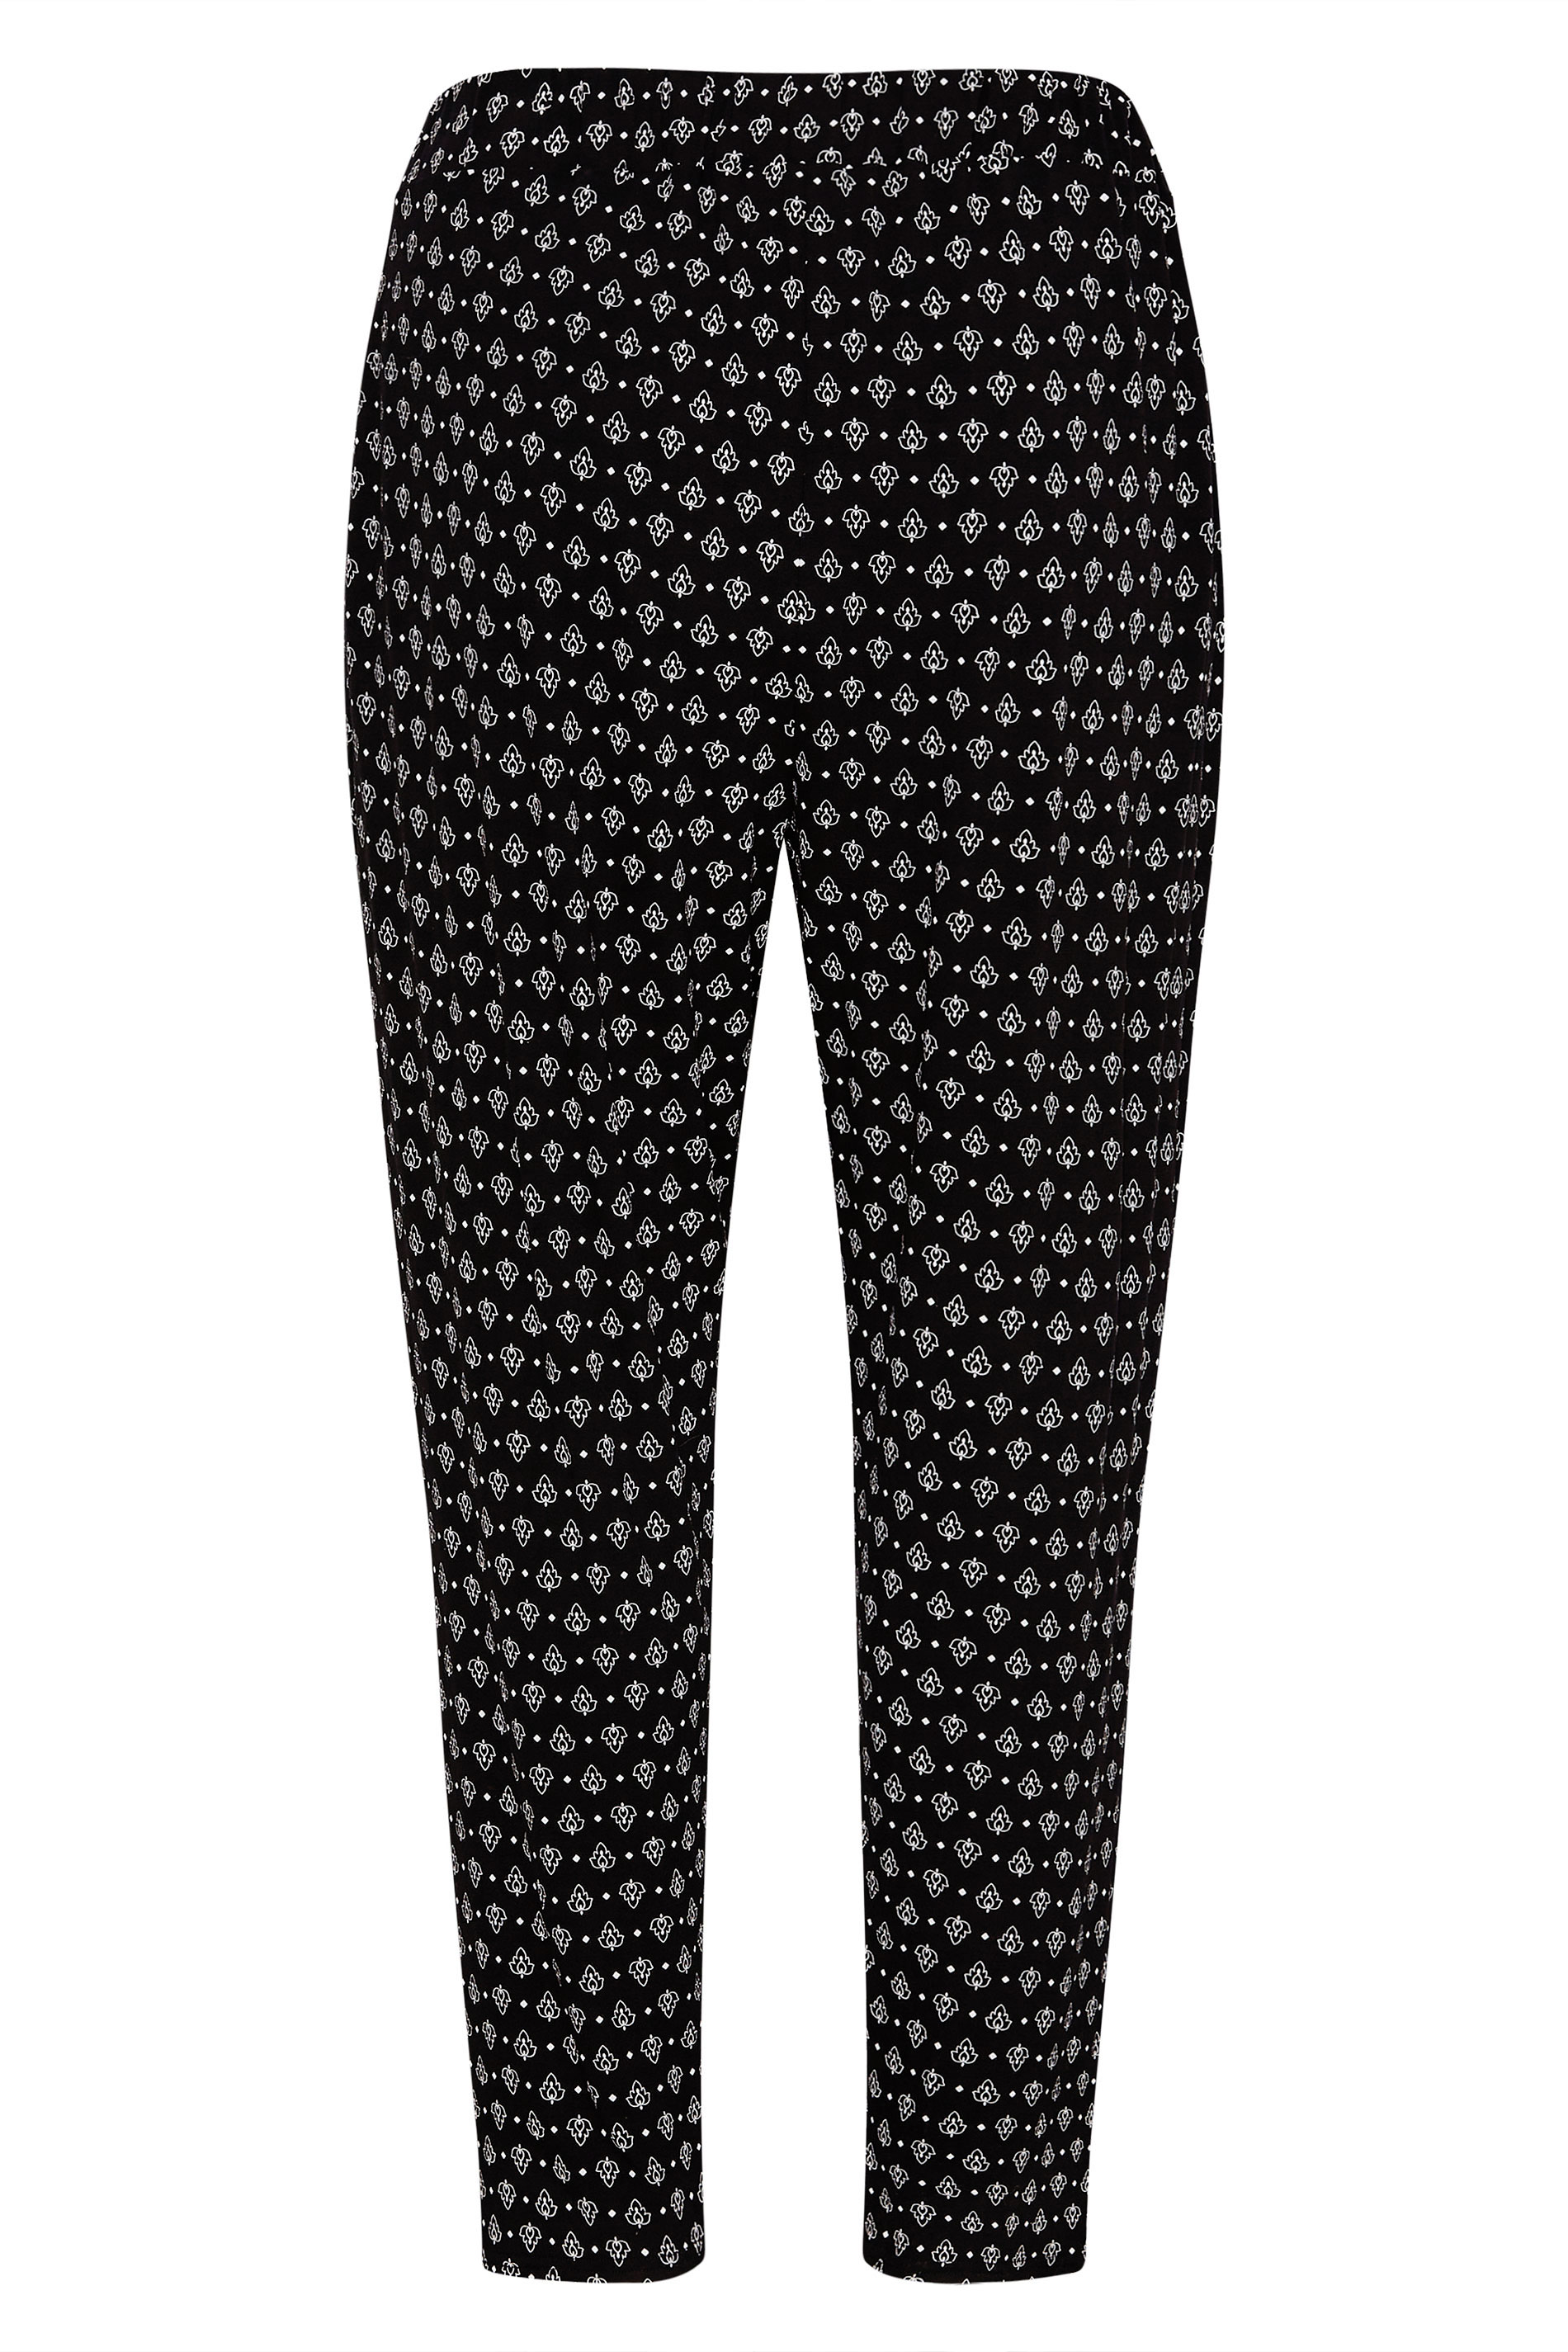 Grande taille  Pantalons Grande taille  Joggings | Jogging Noir Imprimé Géométrique Floral - UB66866